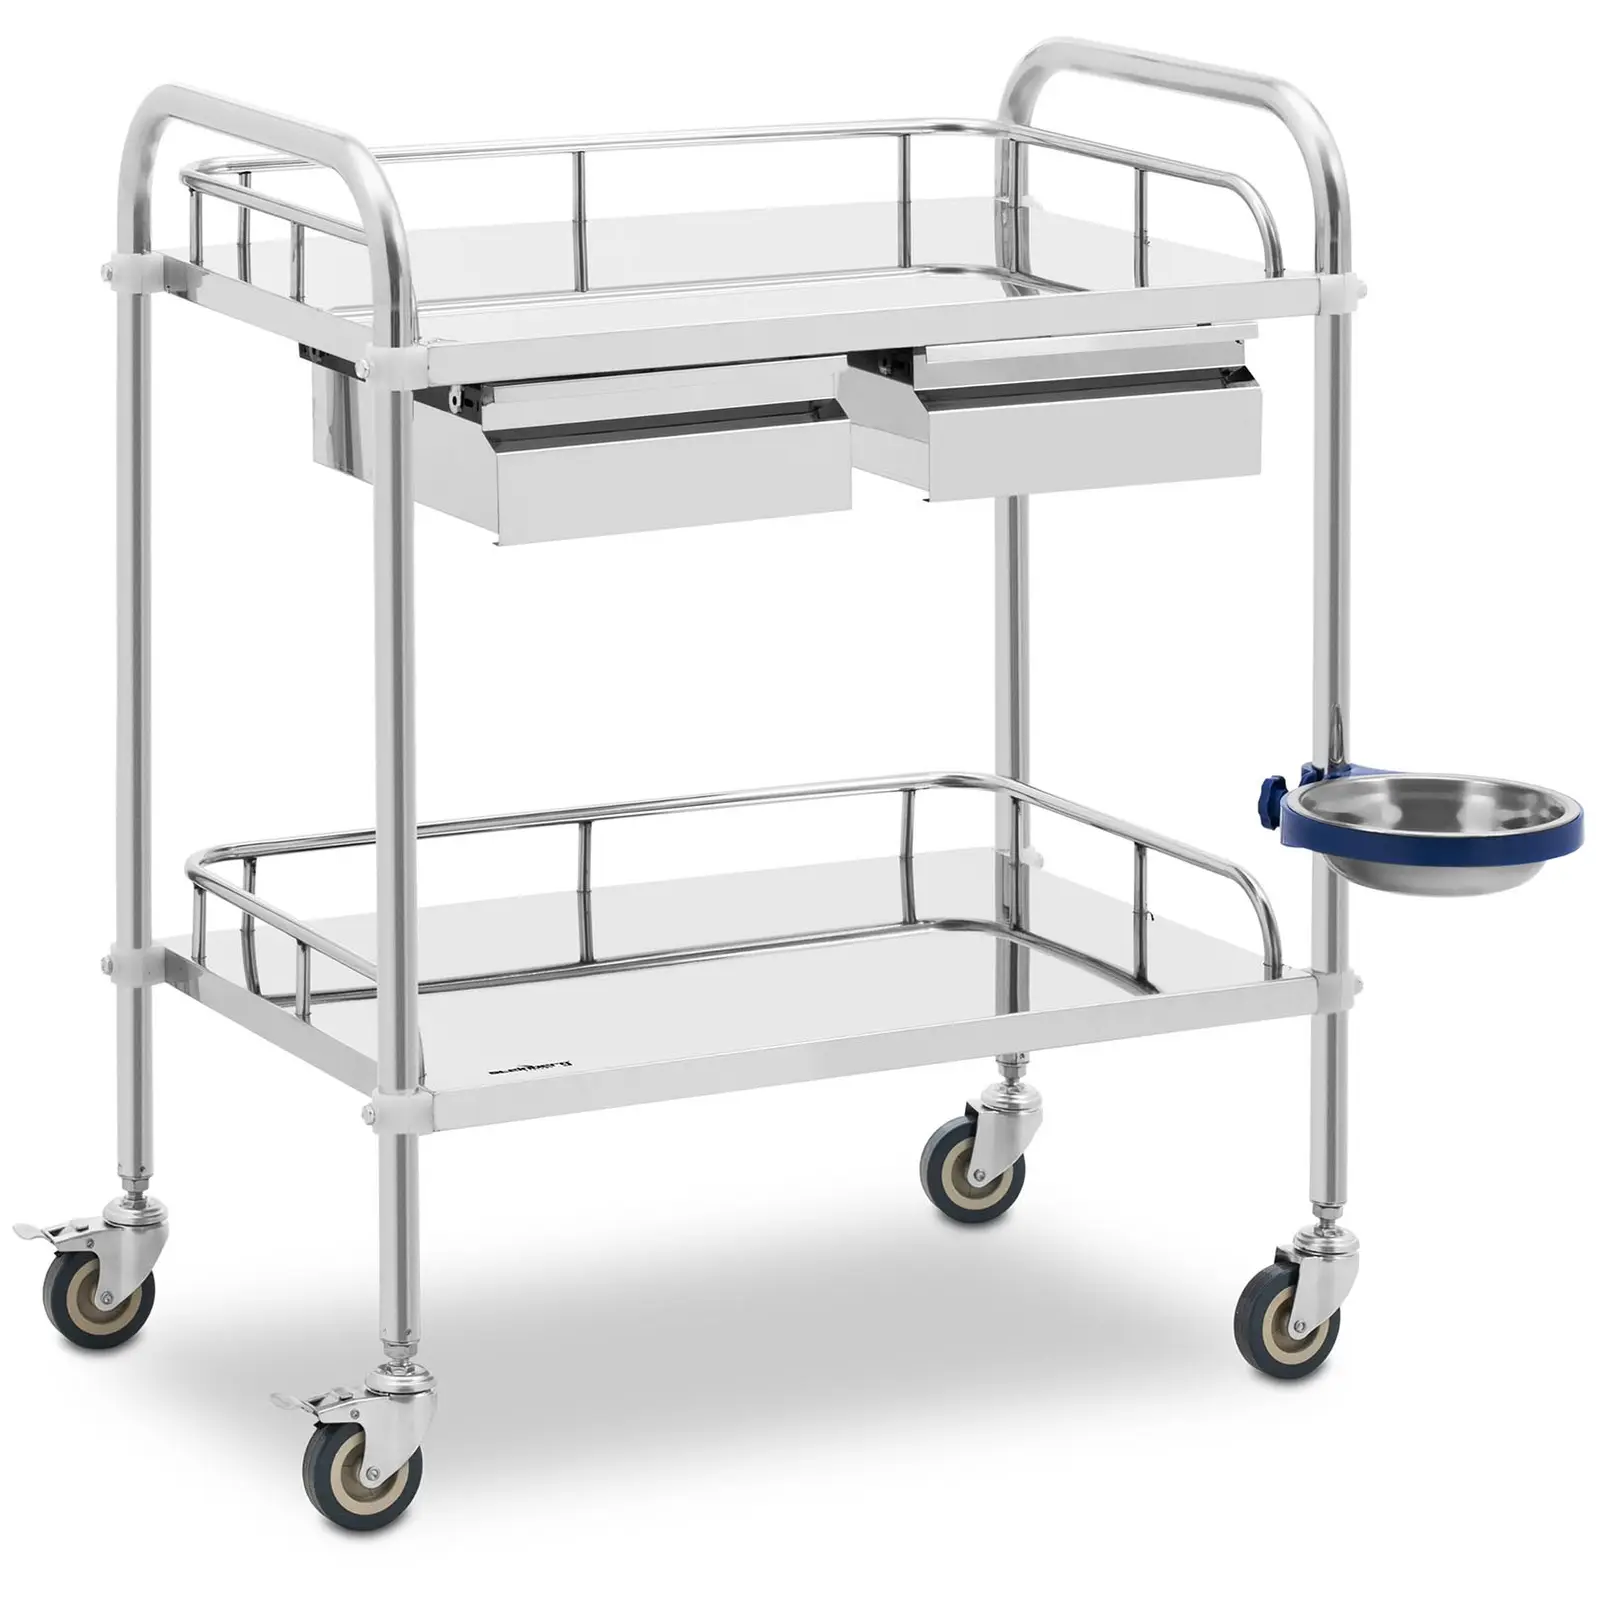 Laboratorijski voziček - nerjaveče jeklo - 2 polici, vsaka 61 x 40 x 13 cm - 2 predala - 20 kg